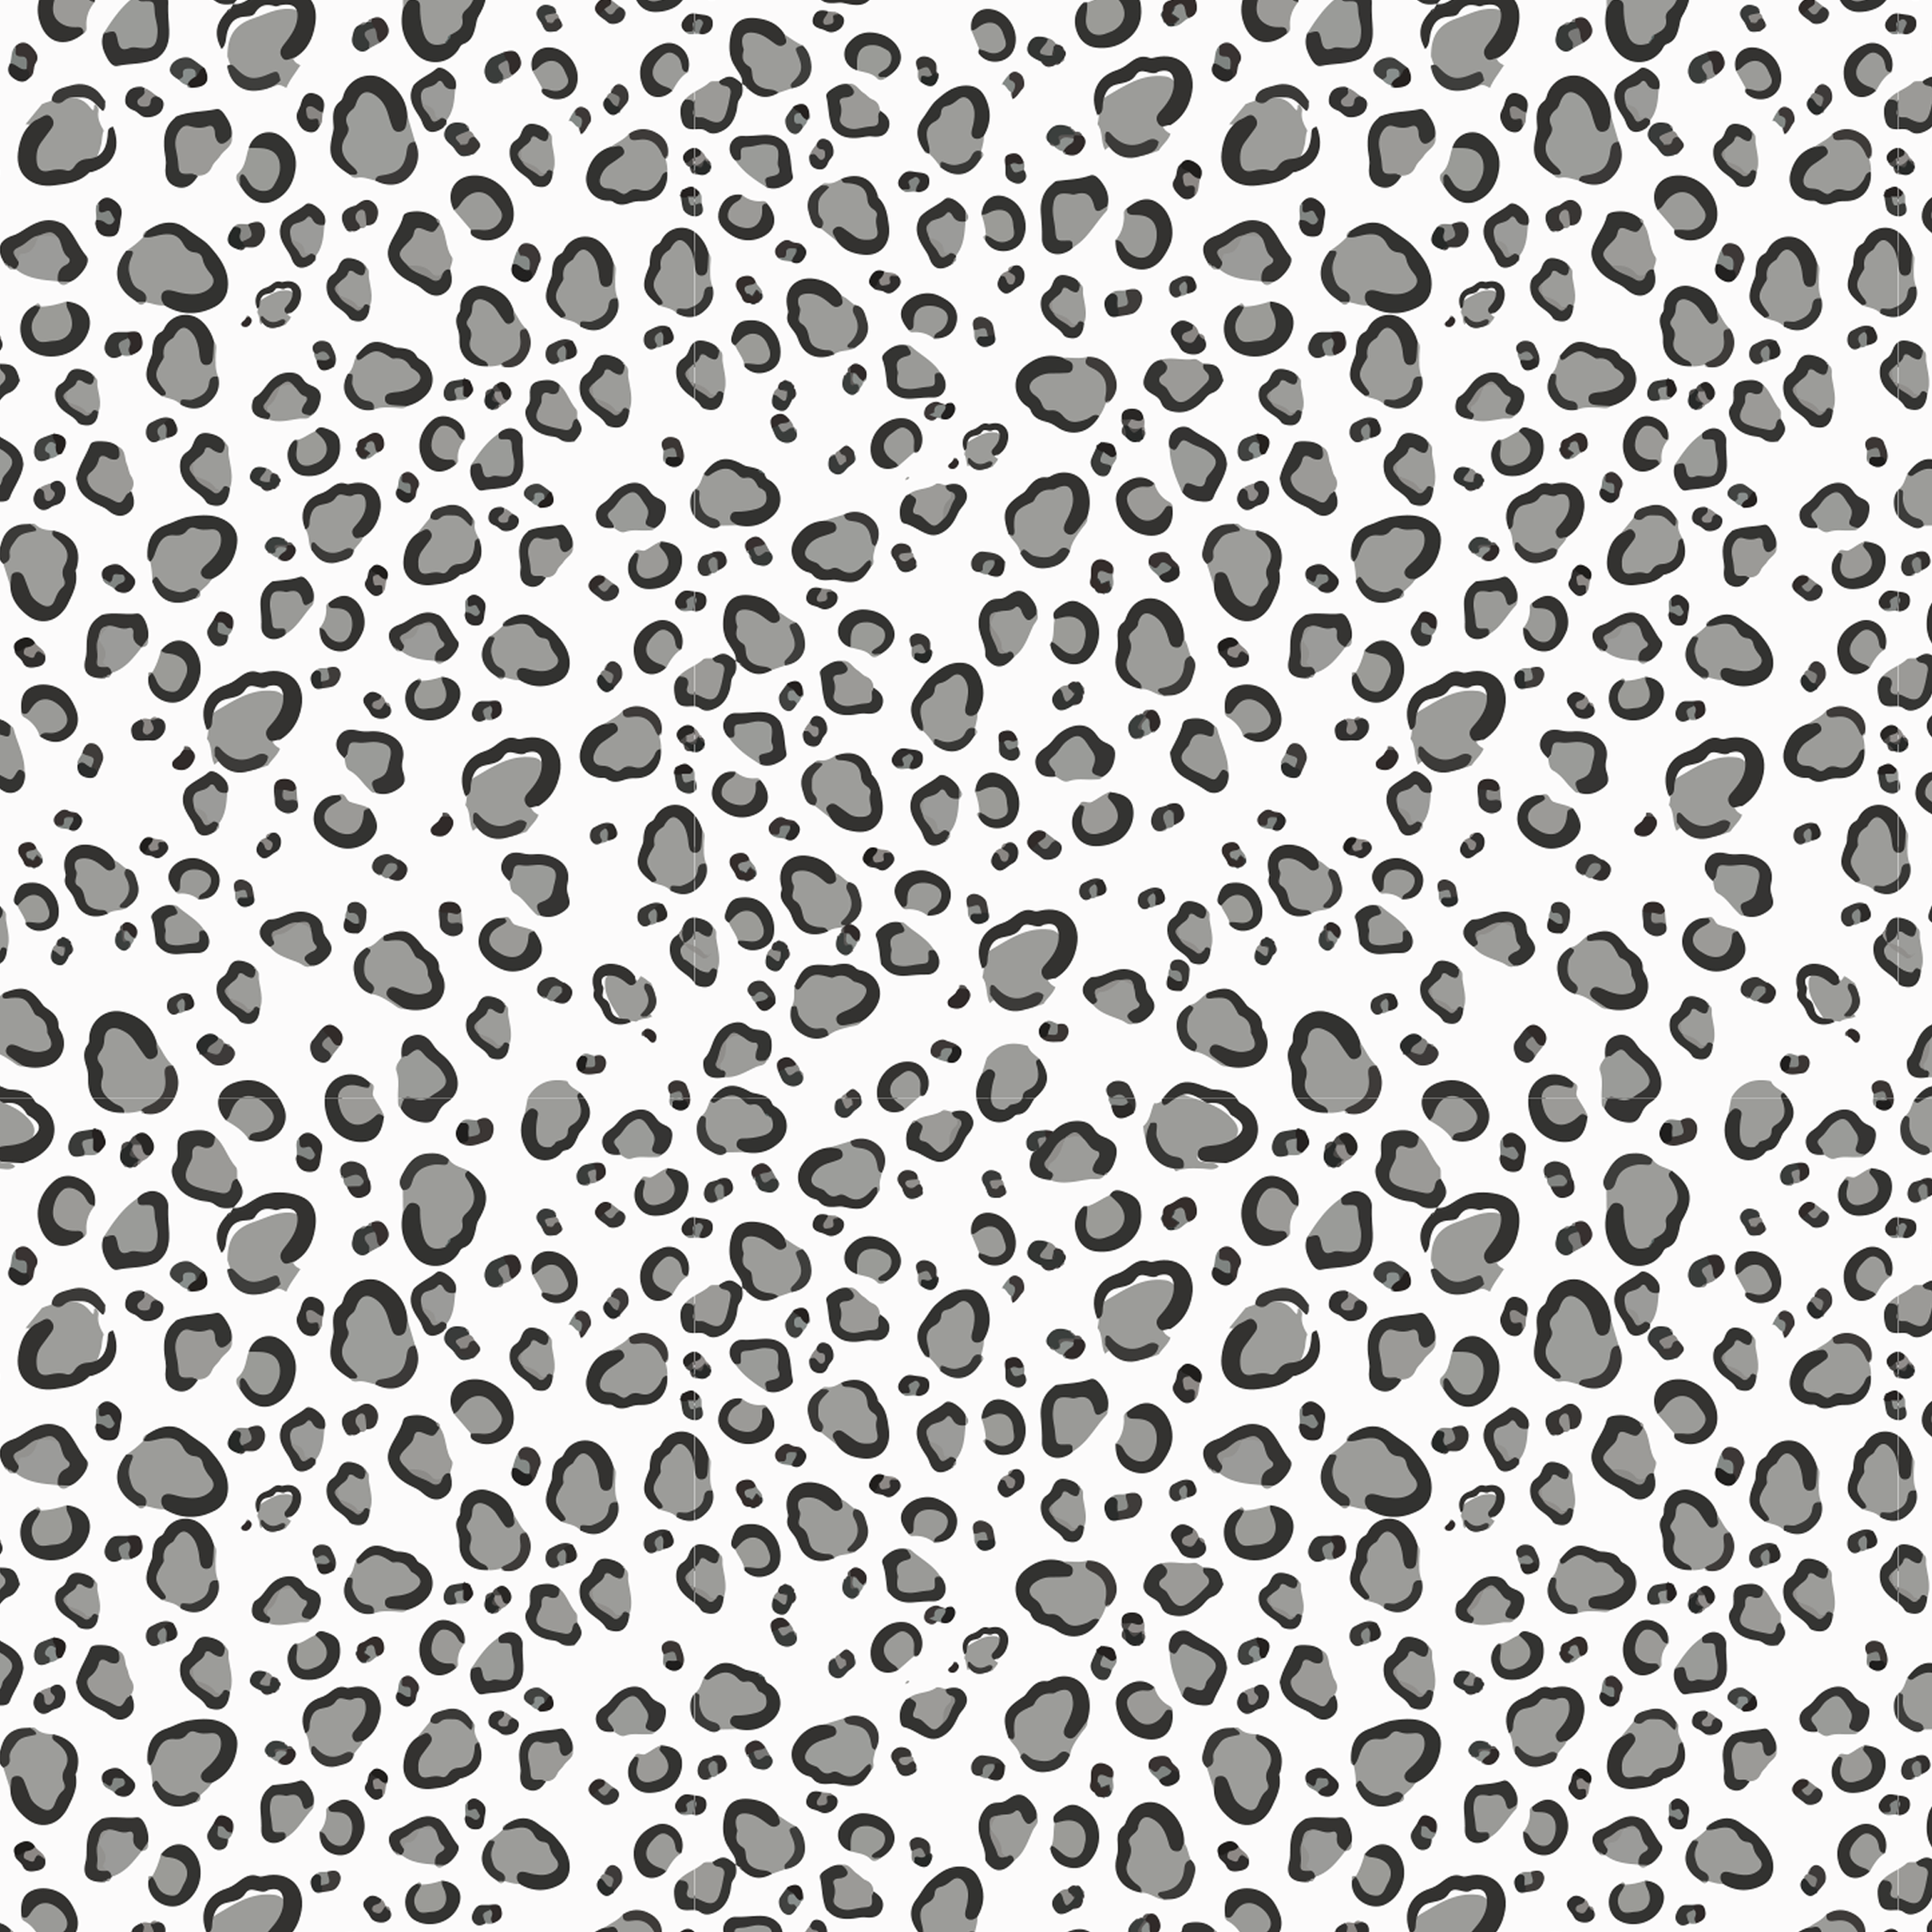 Snow leopard glitter htv – 618 area vinyl